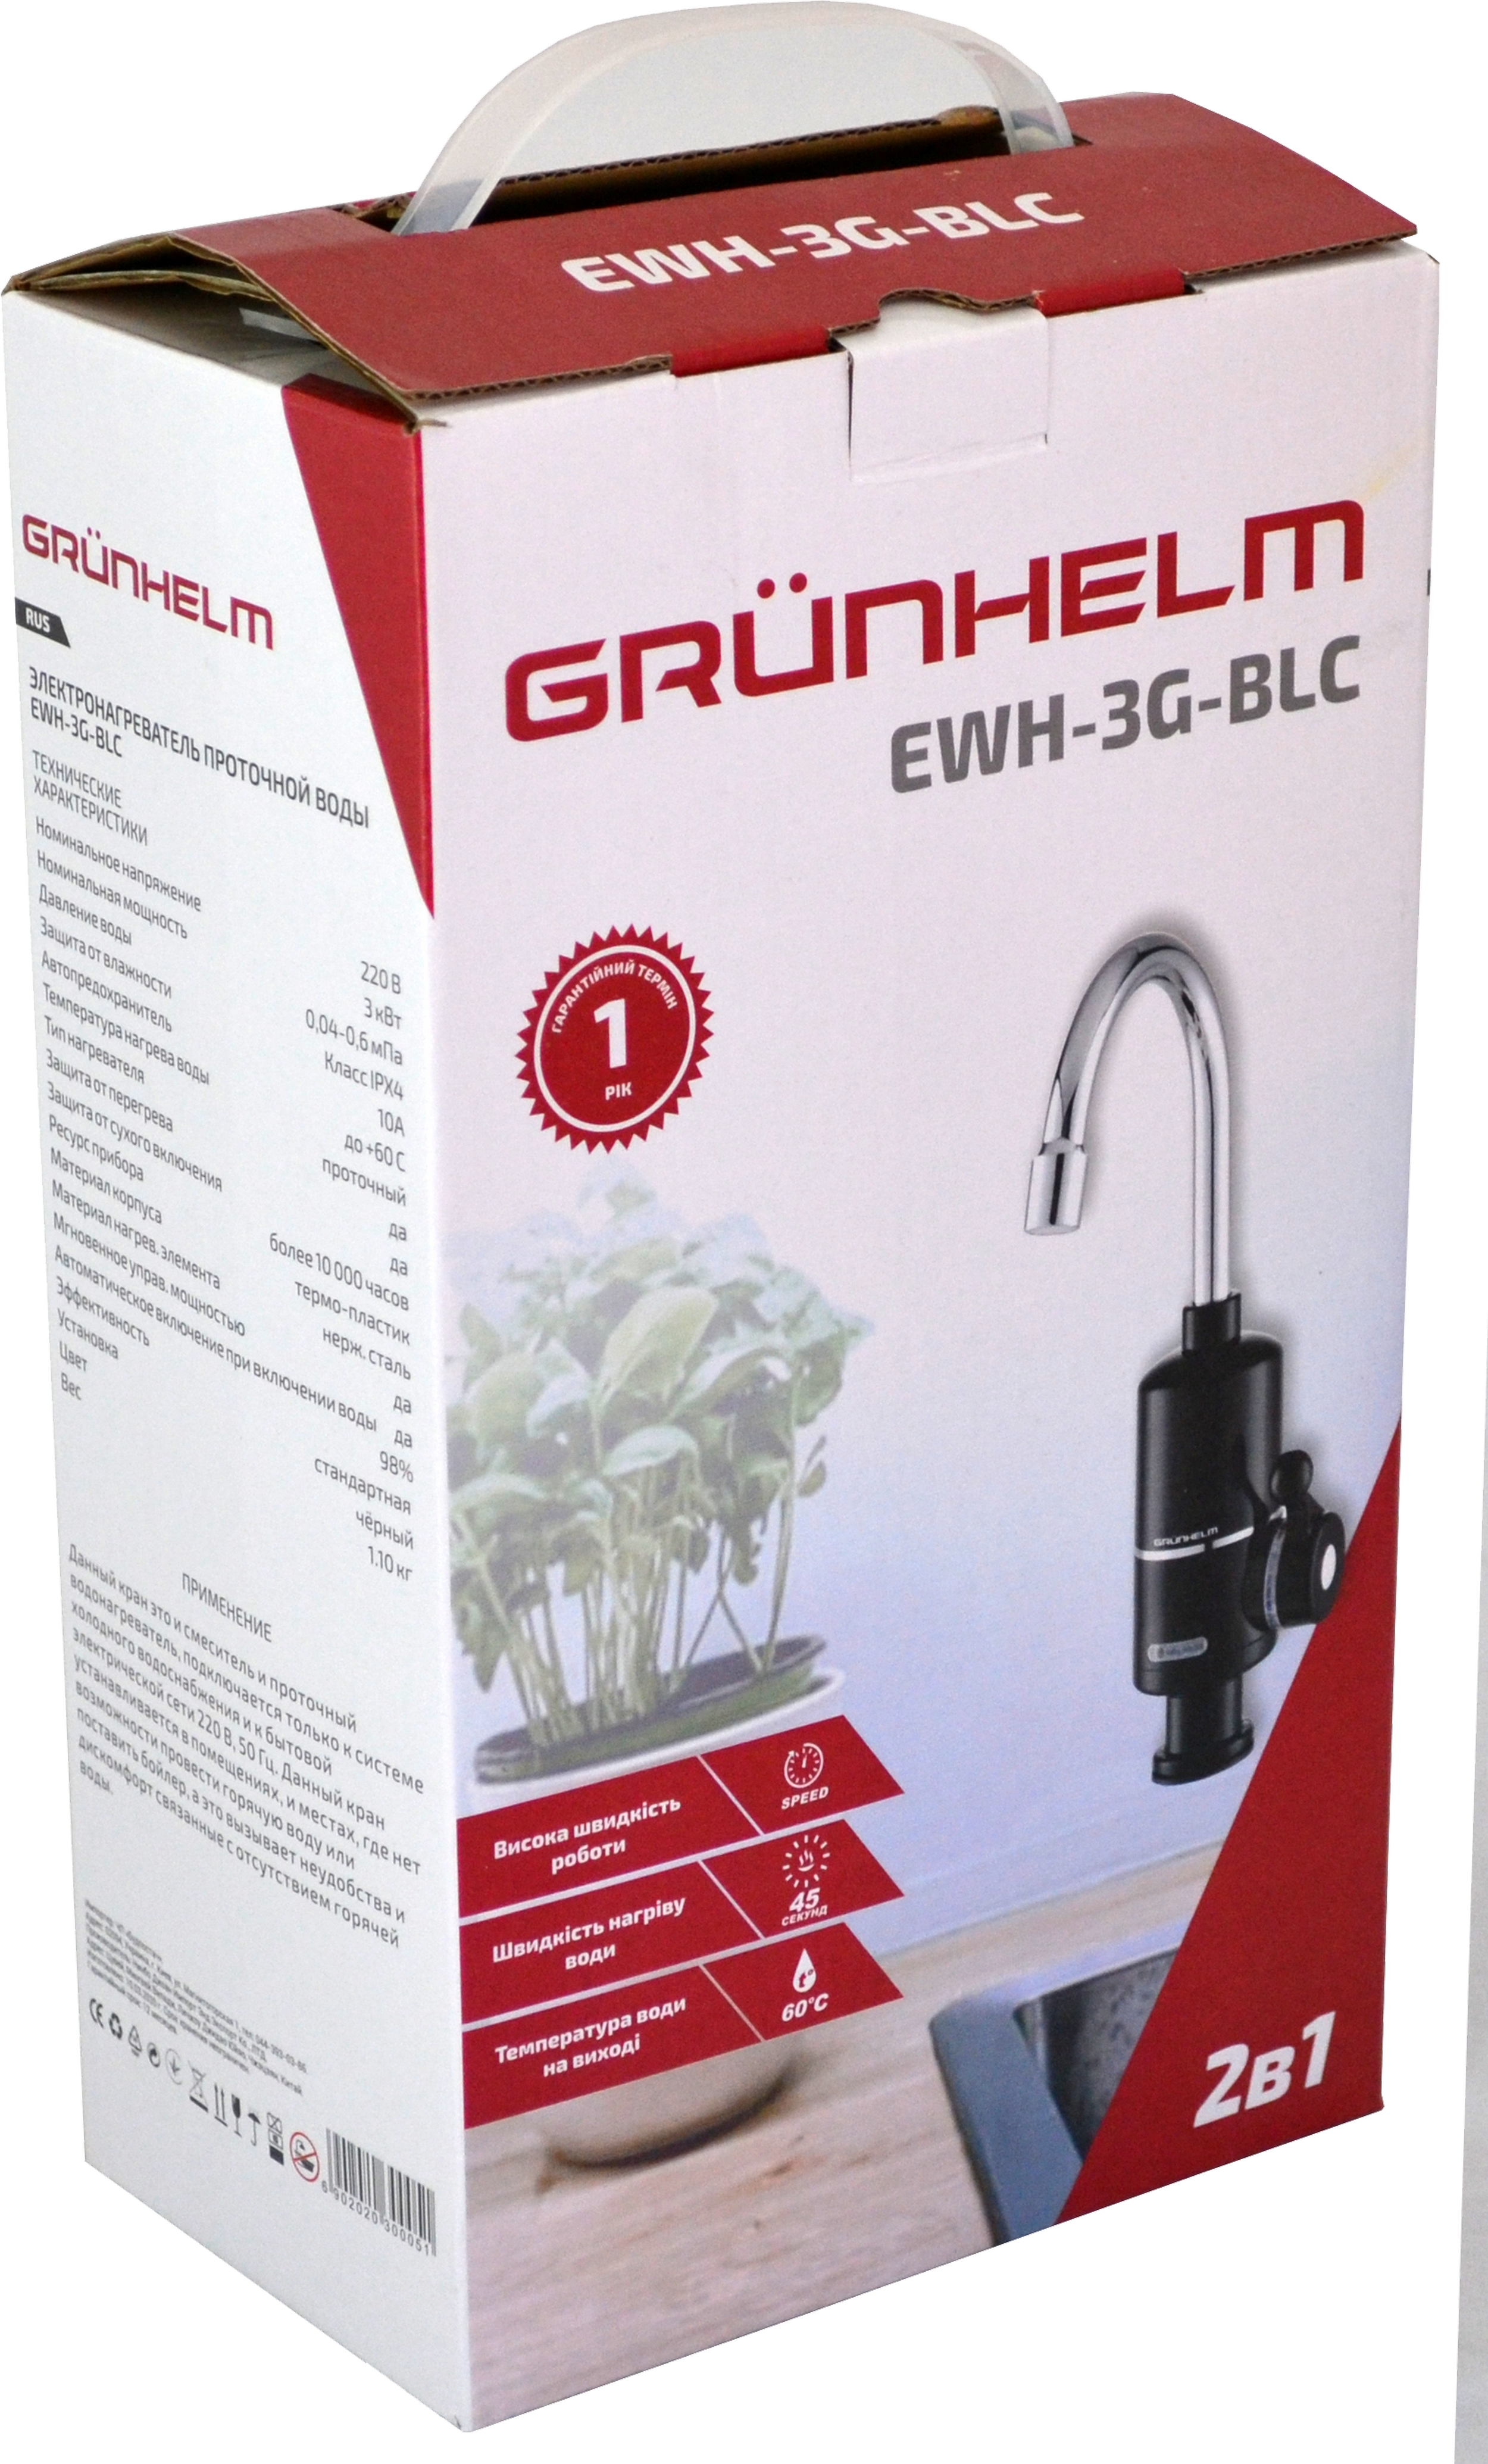 Проточный водонагреватель Grunhelm EWH-3G-BLC характеристики - фотография 7